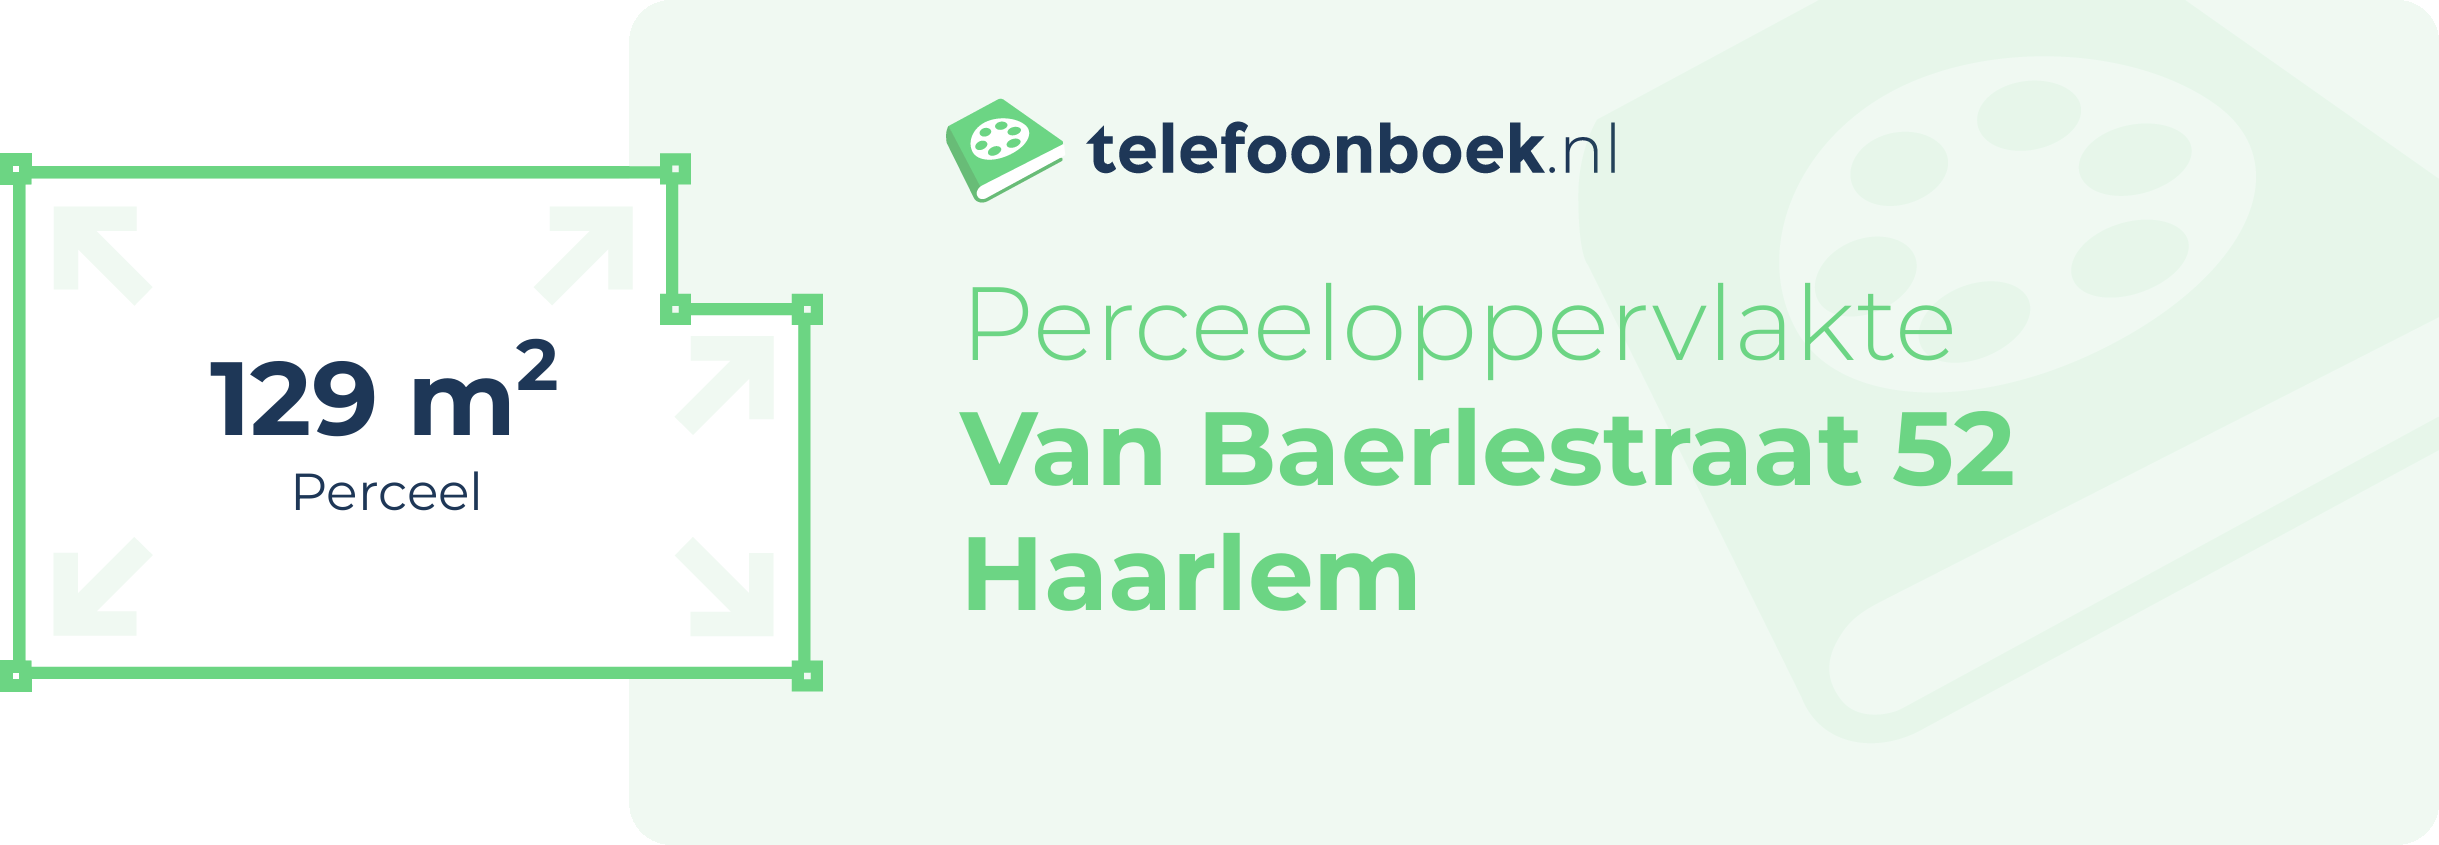 Perceeloppervlakte Van Baerlestraat 52 Haarlem